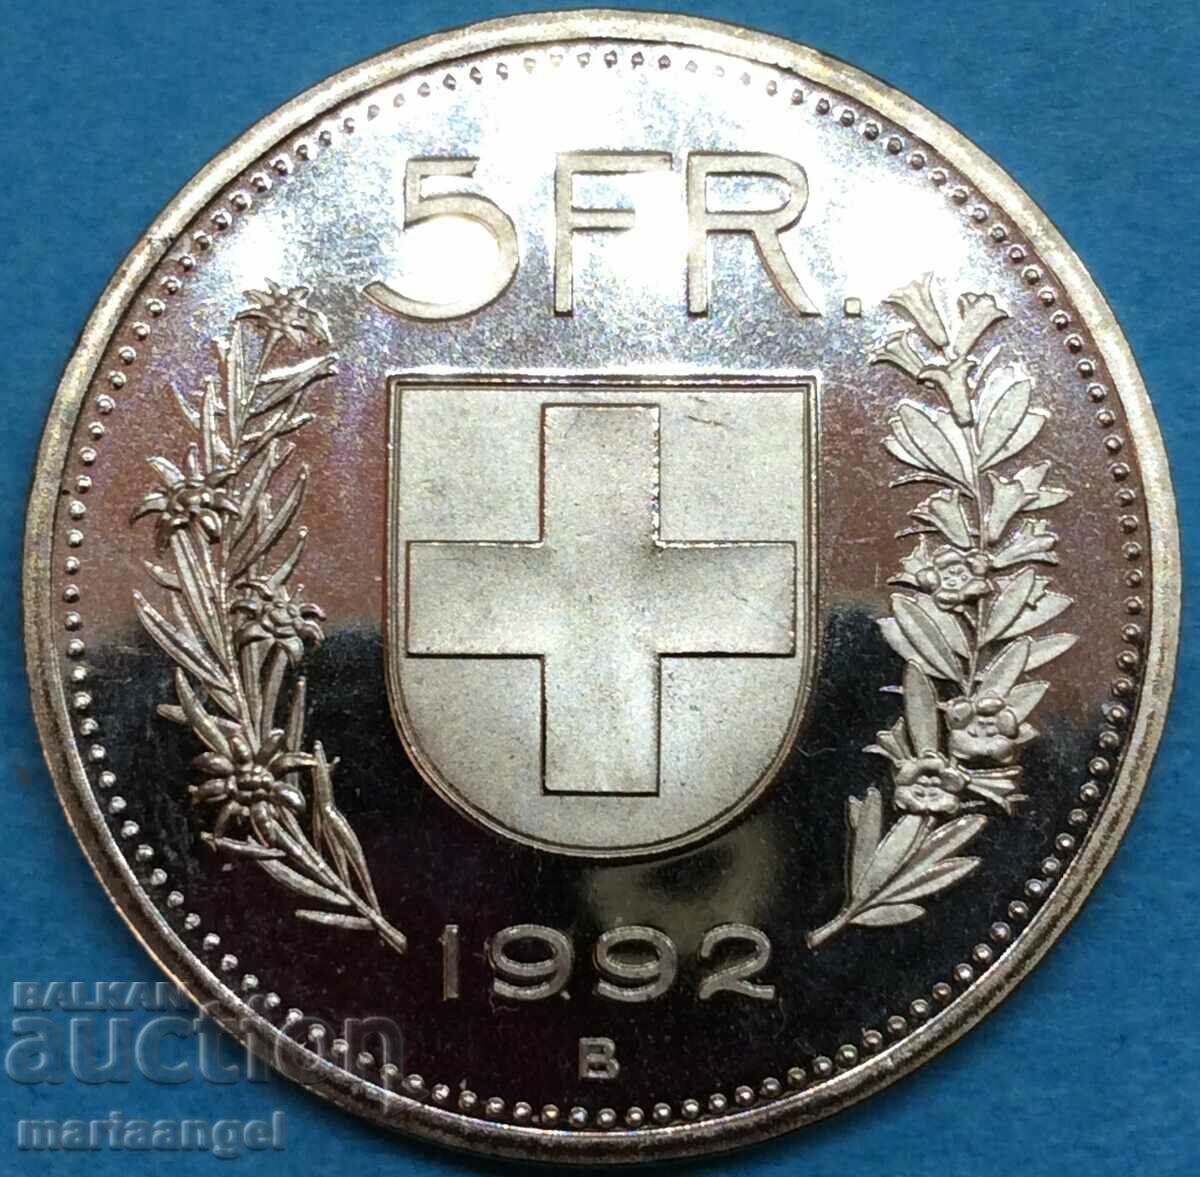 Elvetia 5 franci 1992 UNC PROOF